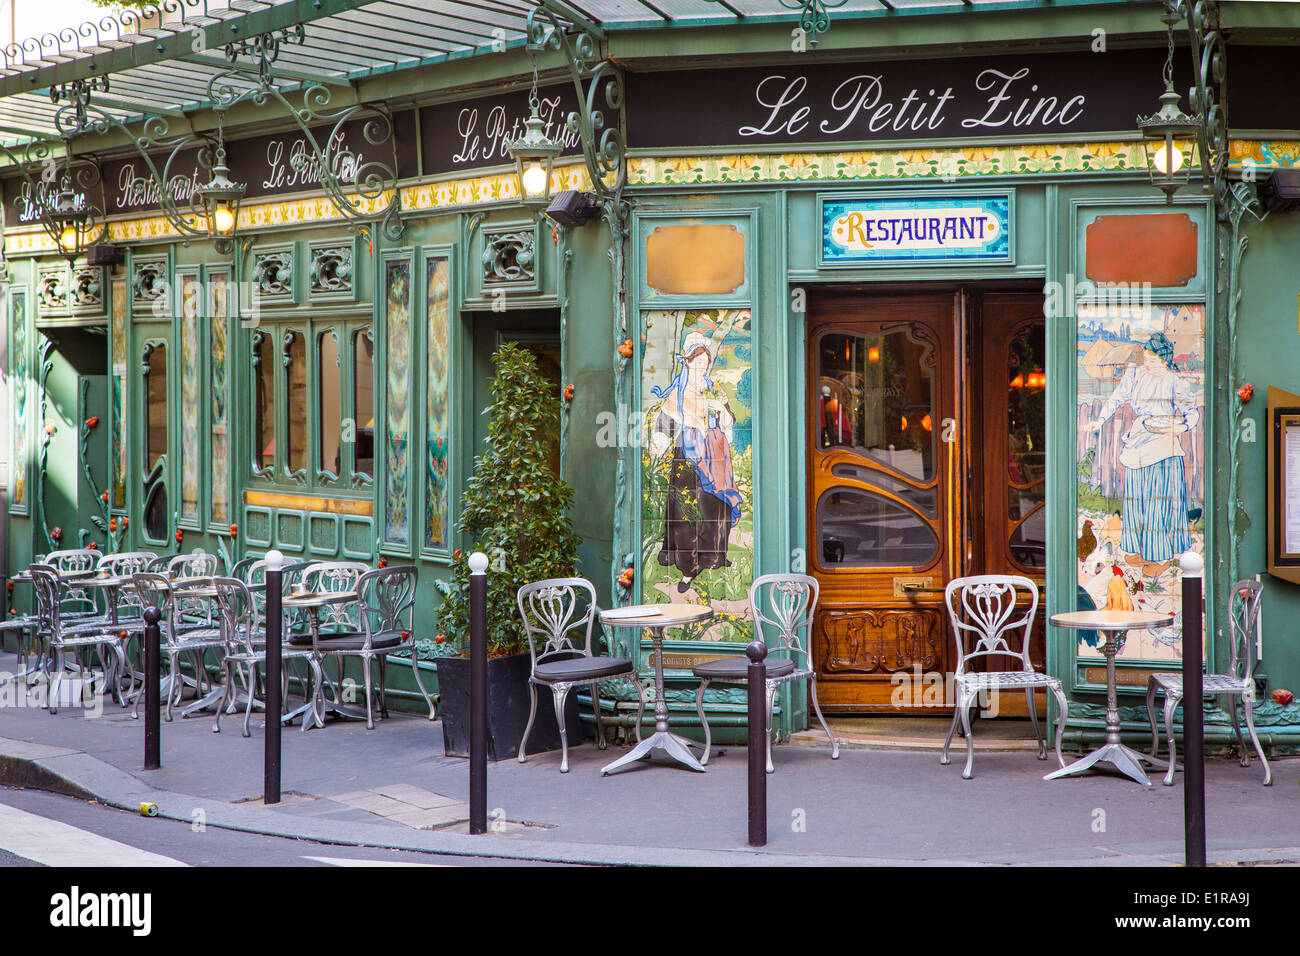 Le Petit Zinc restaurant along Rue des Saints-Pères, Saint-Germain-des-Pres, Paris France Stock Photo